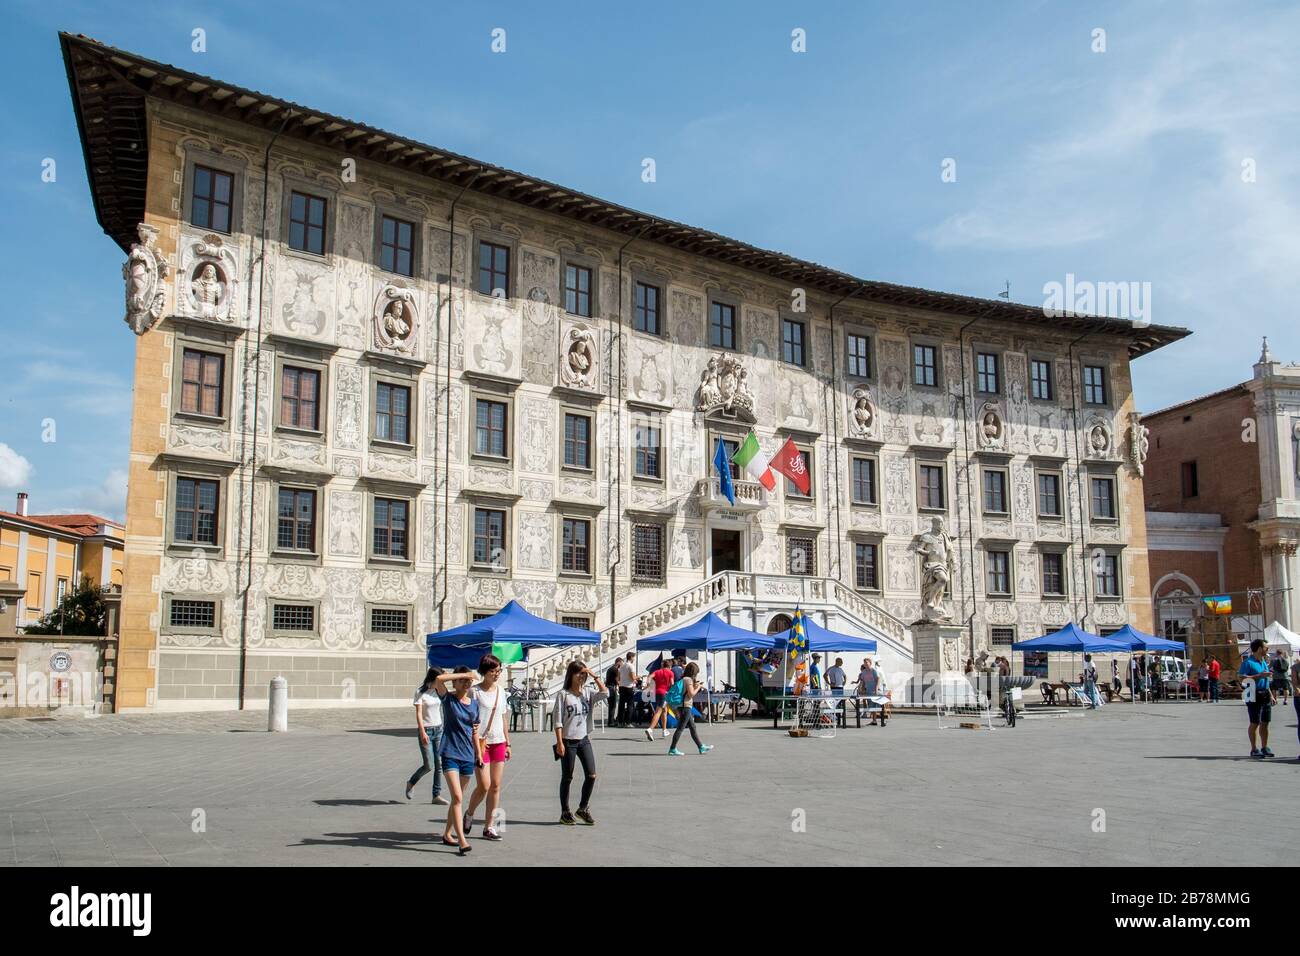 Palazzo della Carovana, the main building of the world famous university Scuola Normale Superiore at Piazza dei Cavalieri in Pisa Italy Stock Photo